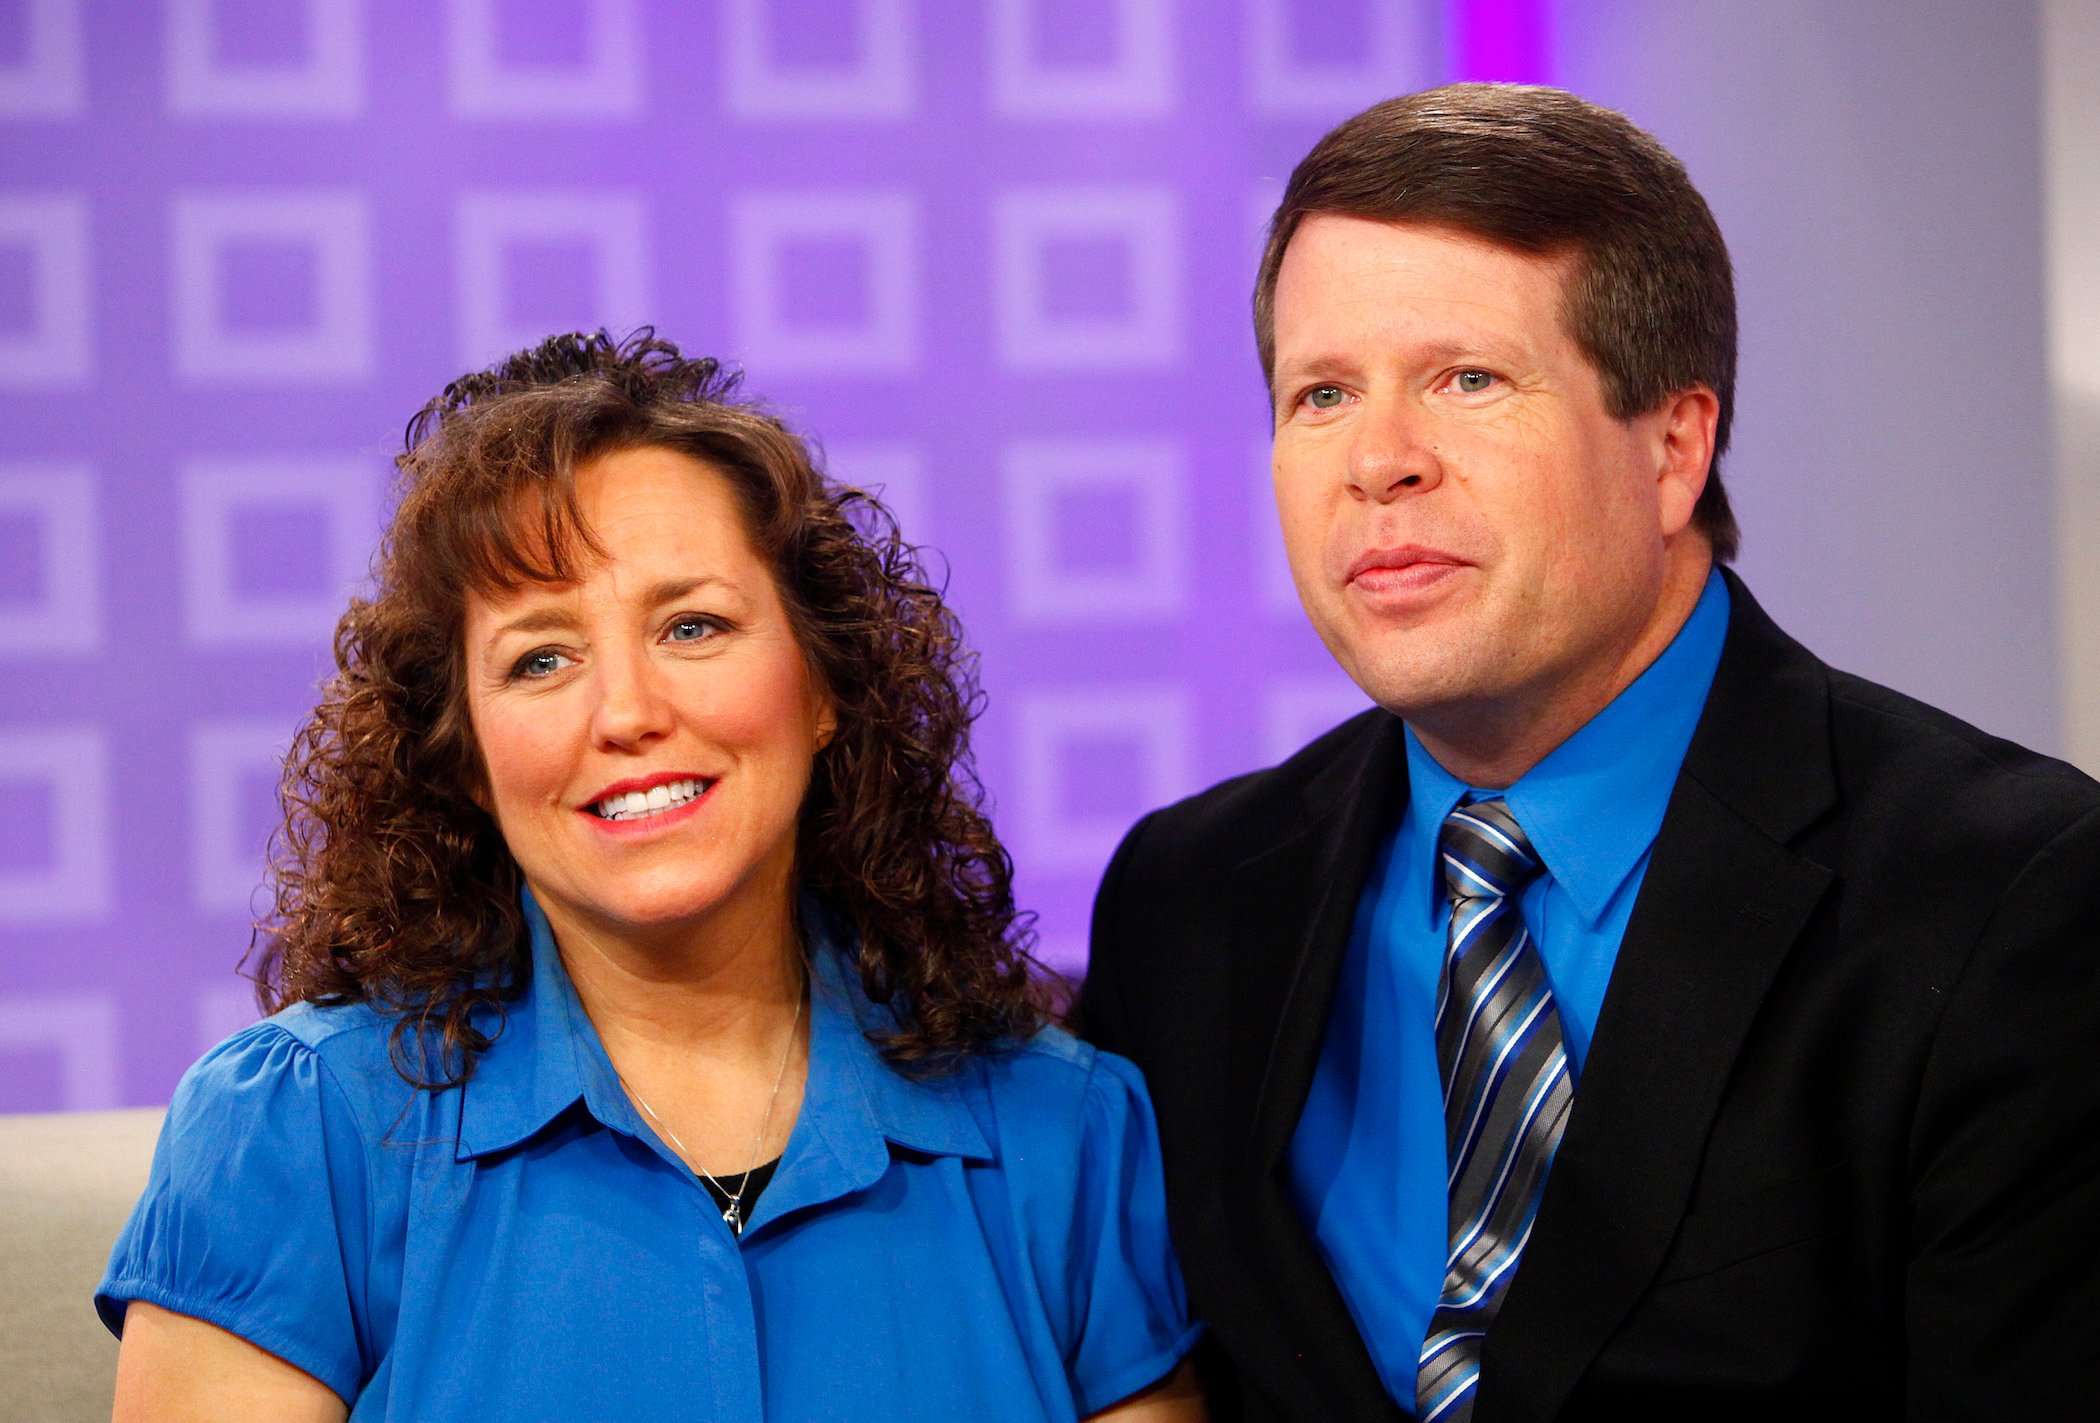 Michelle Duggar and Jim Bob Duggar sitting down against a purple background